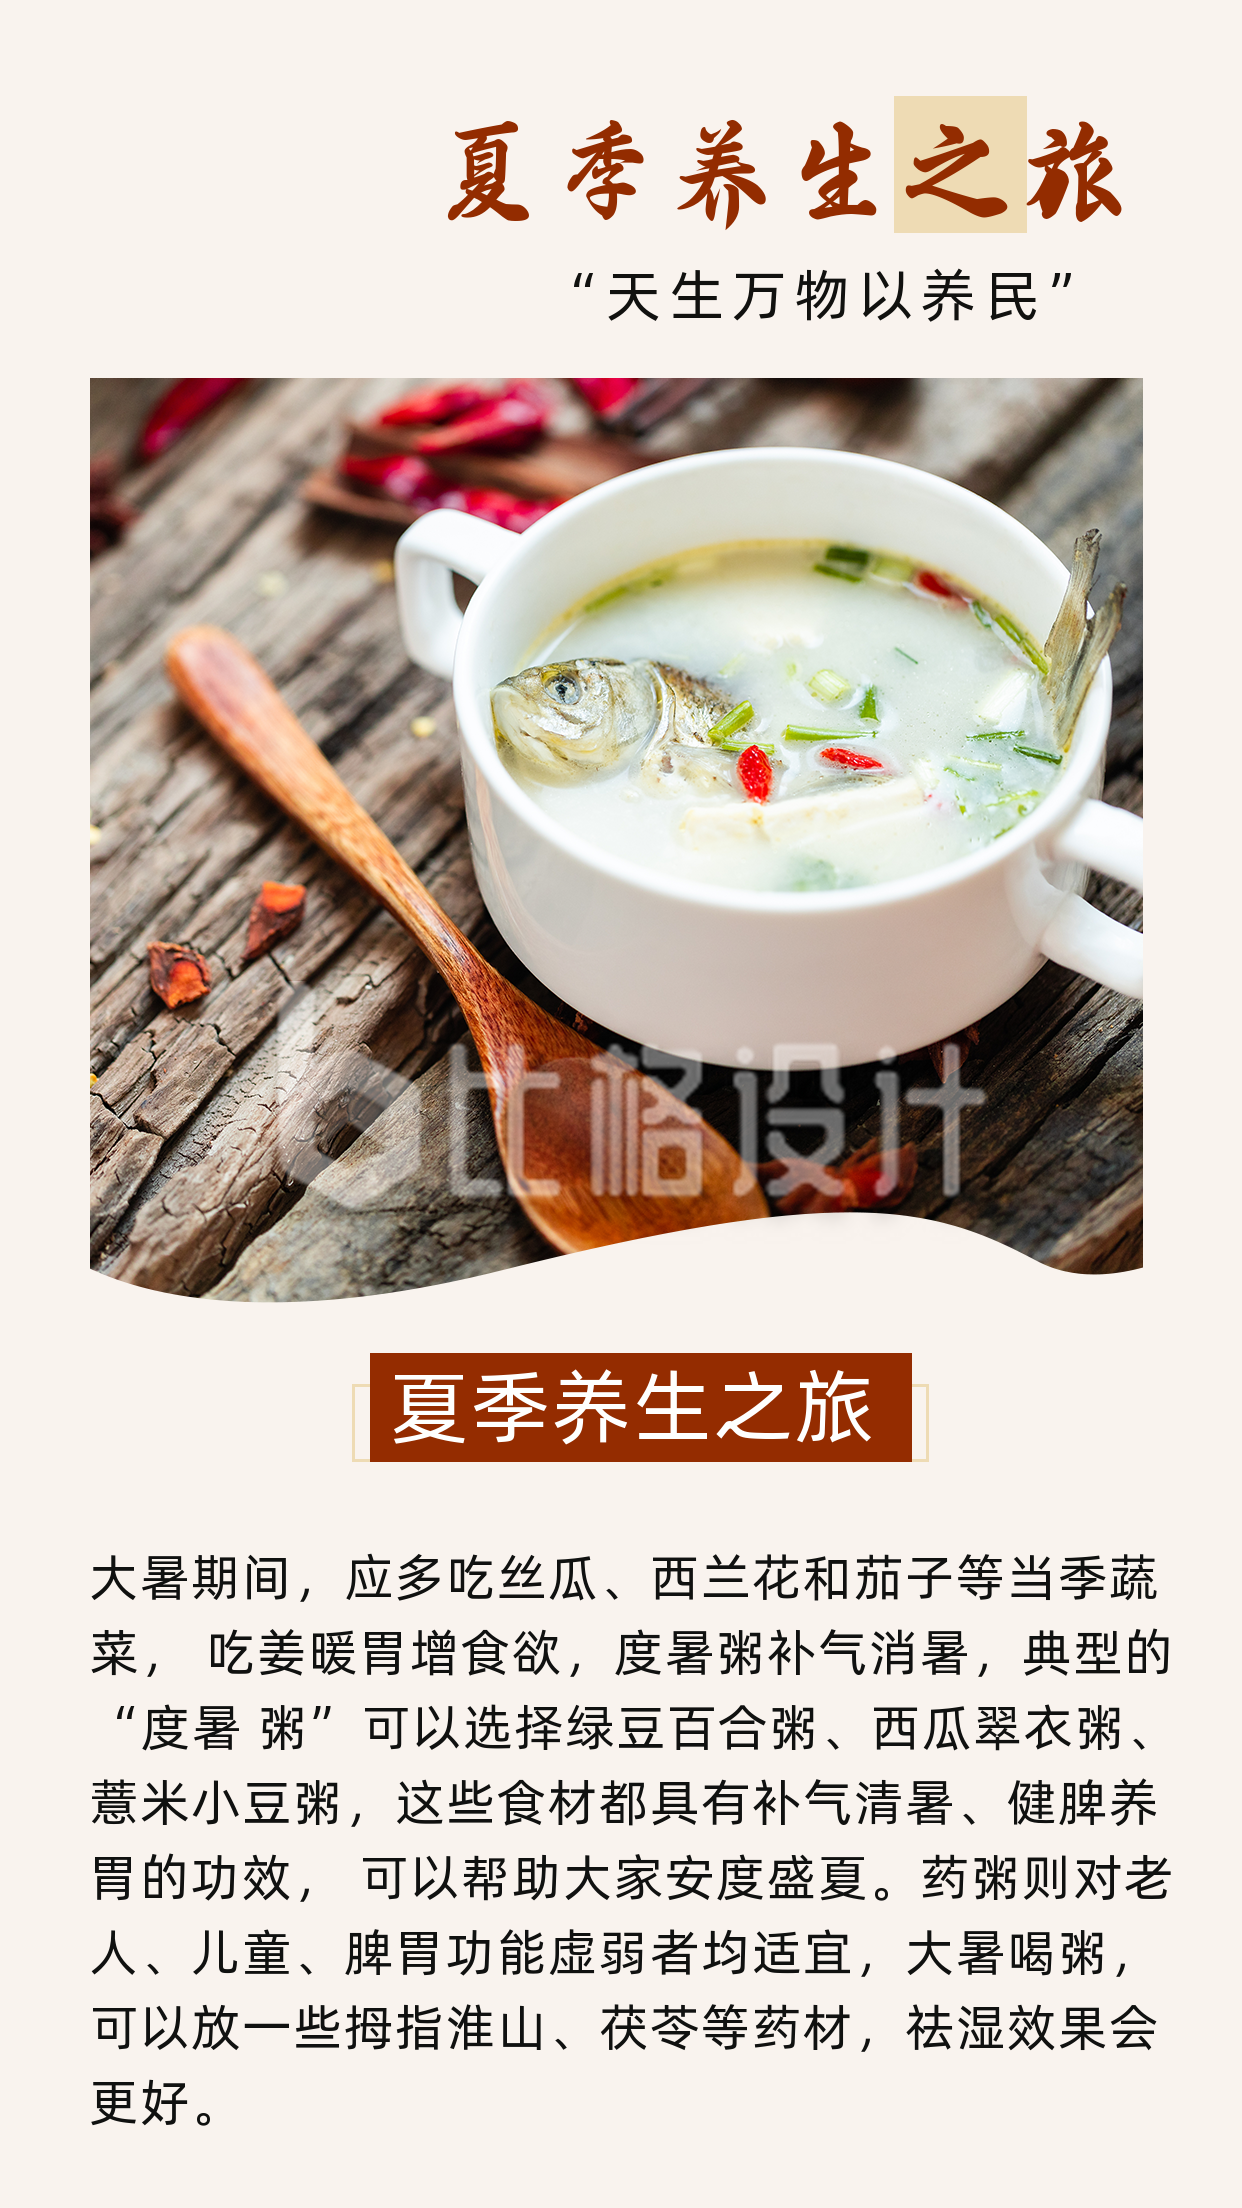 简约中国风传统三伏天养生美食竖版配图